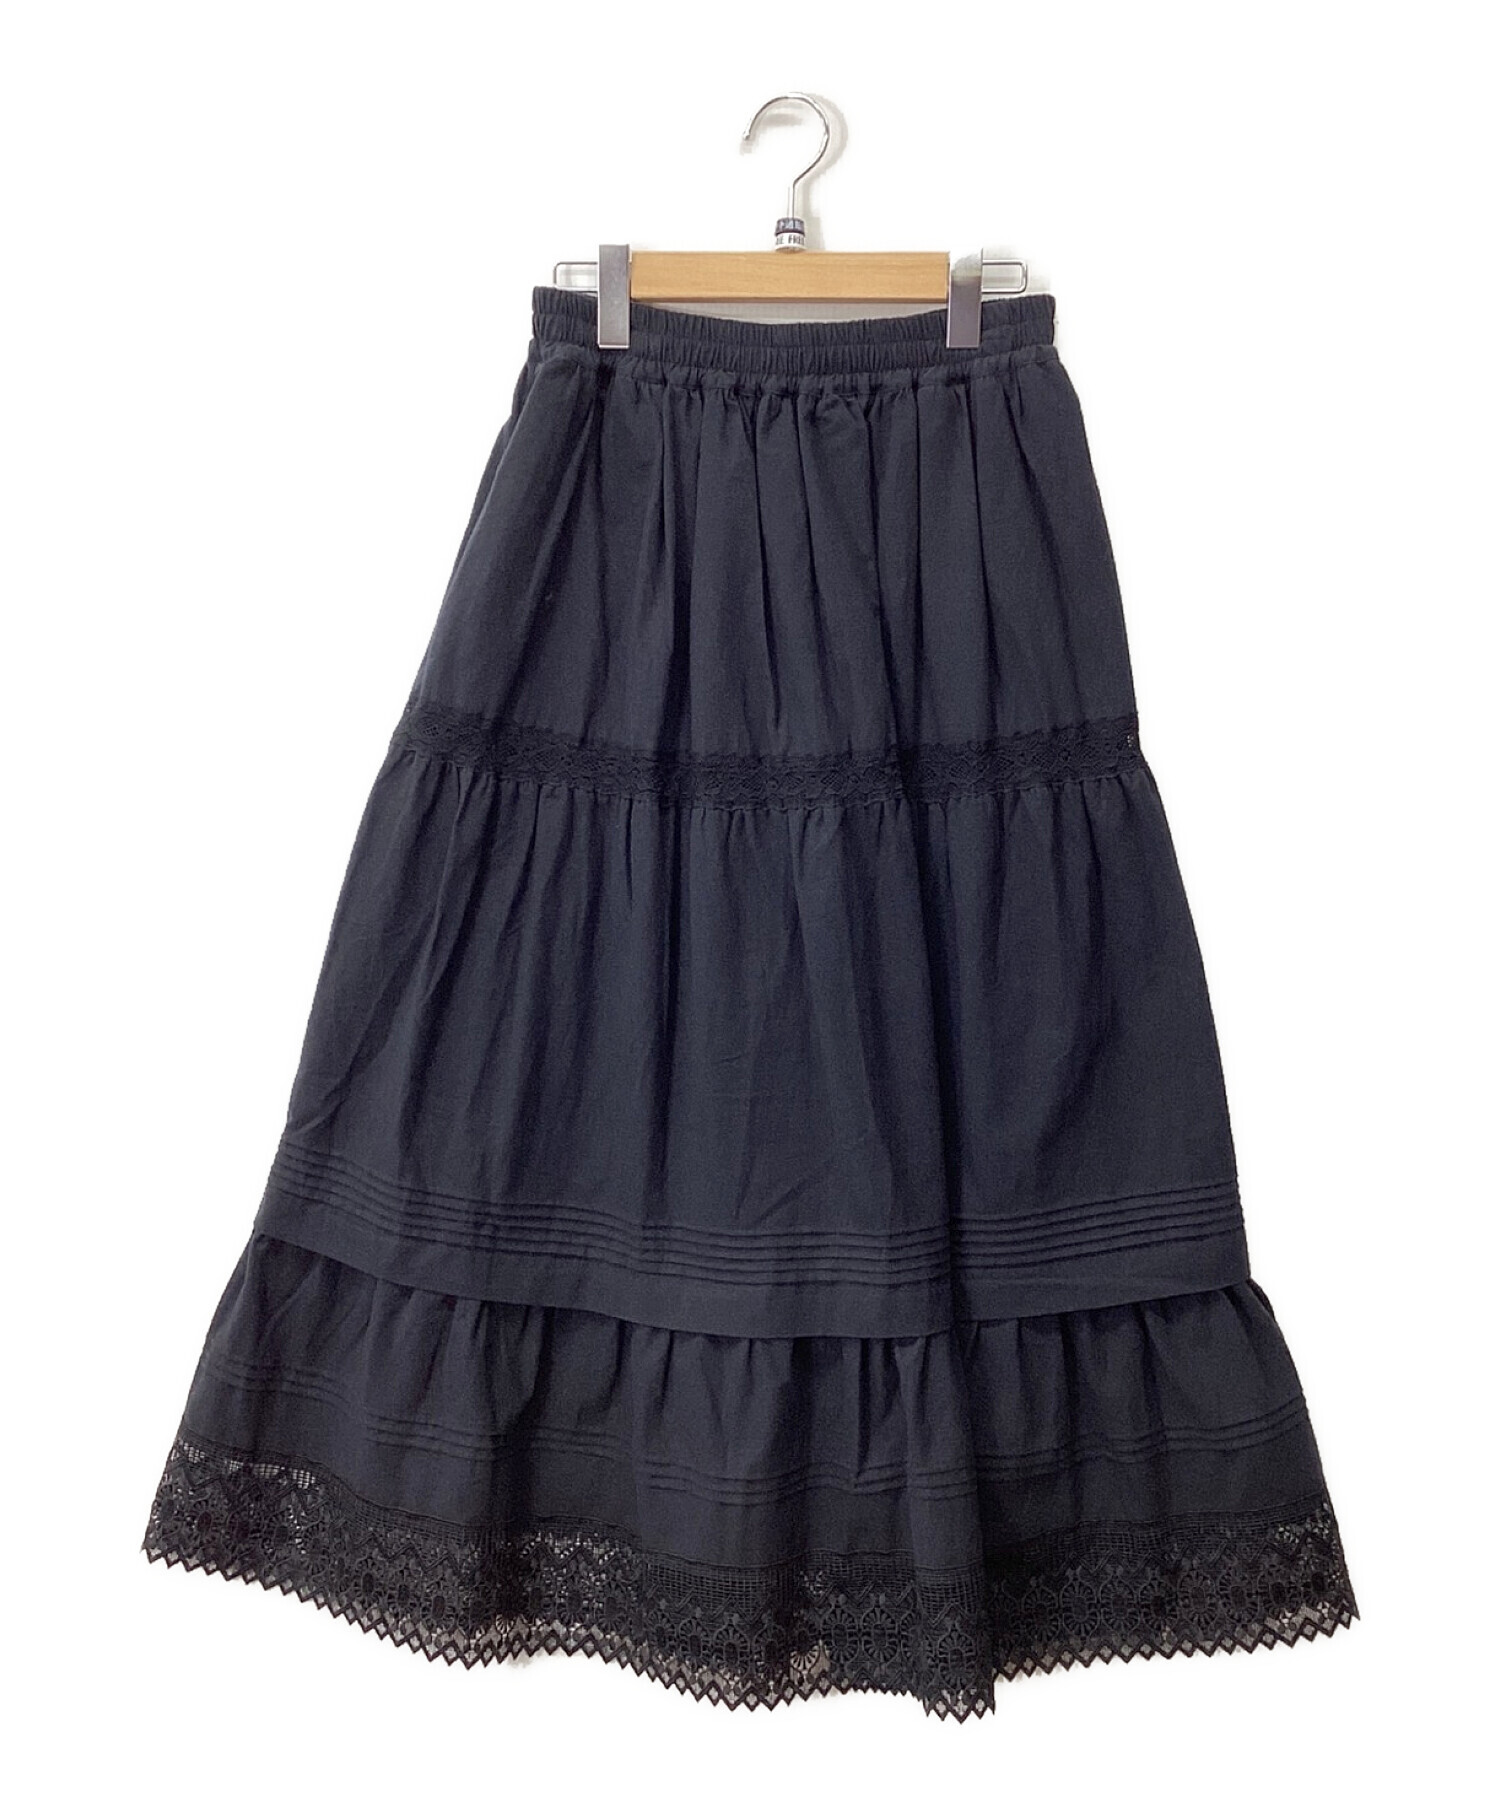 Samansa Mos2 (サマンサモスモス) 裾レースティアードスカート ブラック サイズ:FREE 未使用品